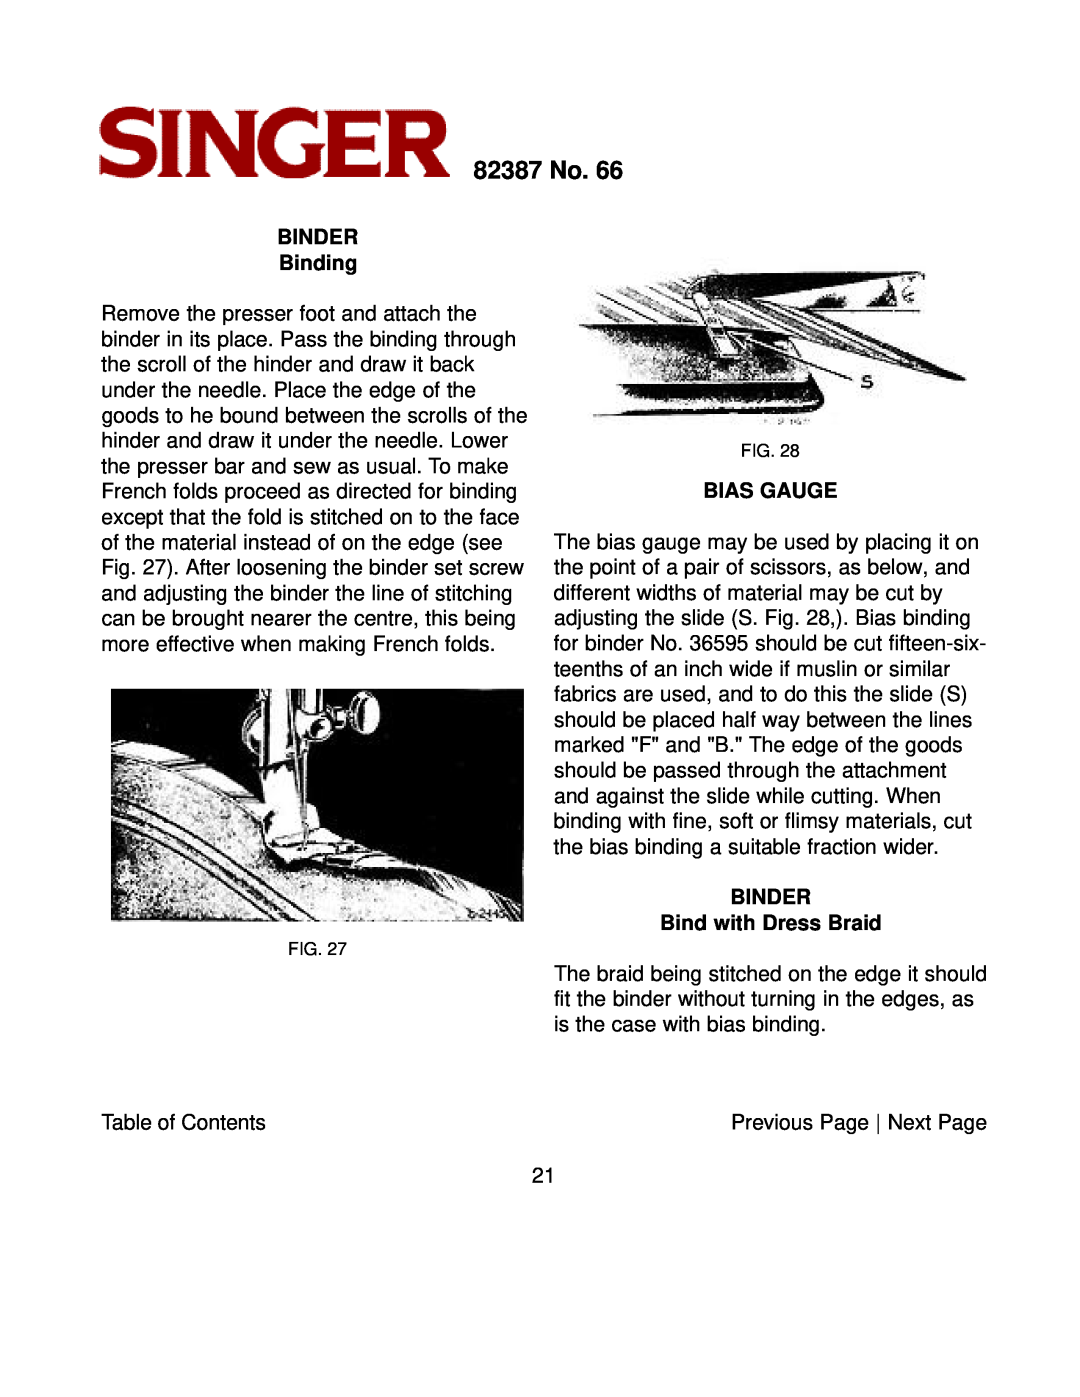 Singer instruction manual BINDER Binding, Bias Gauge, BINDER Bind with Dress Braid, 82387 No 